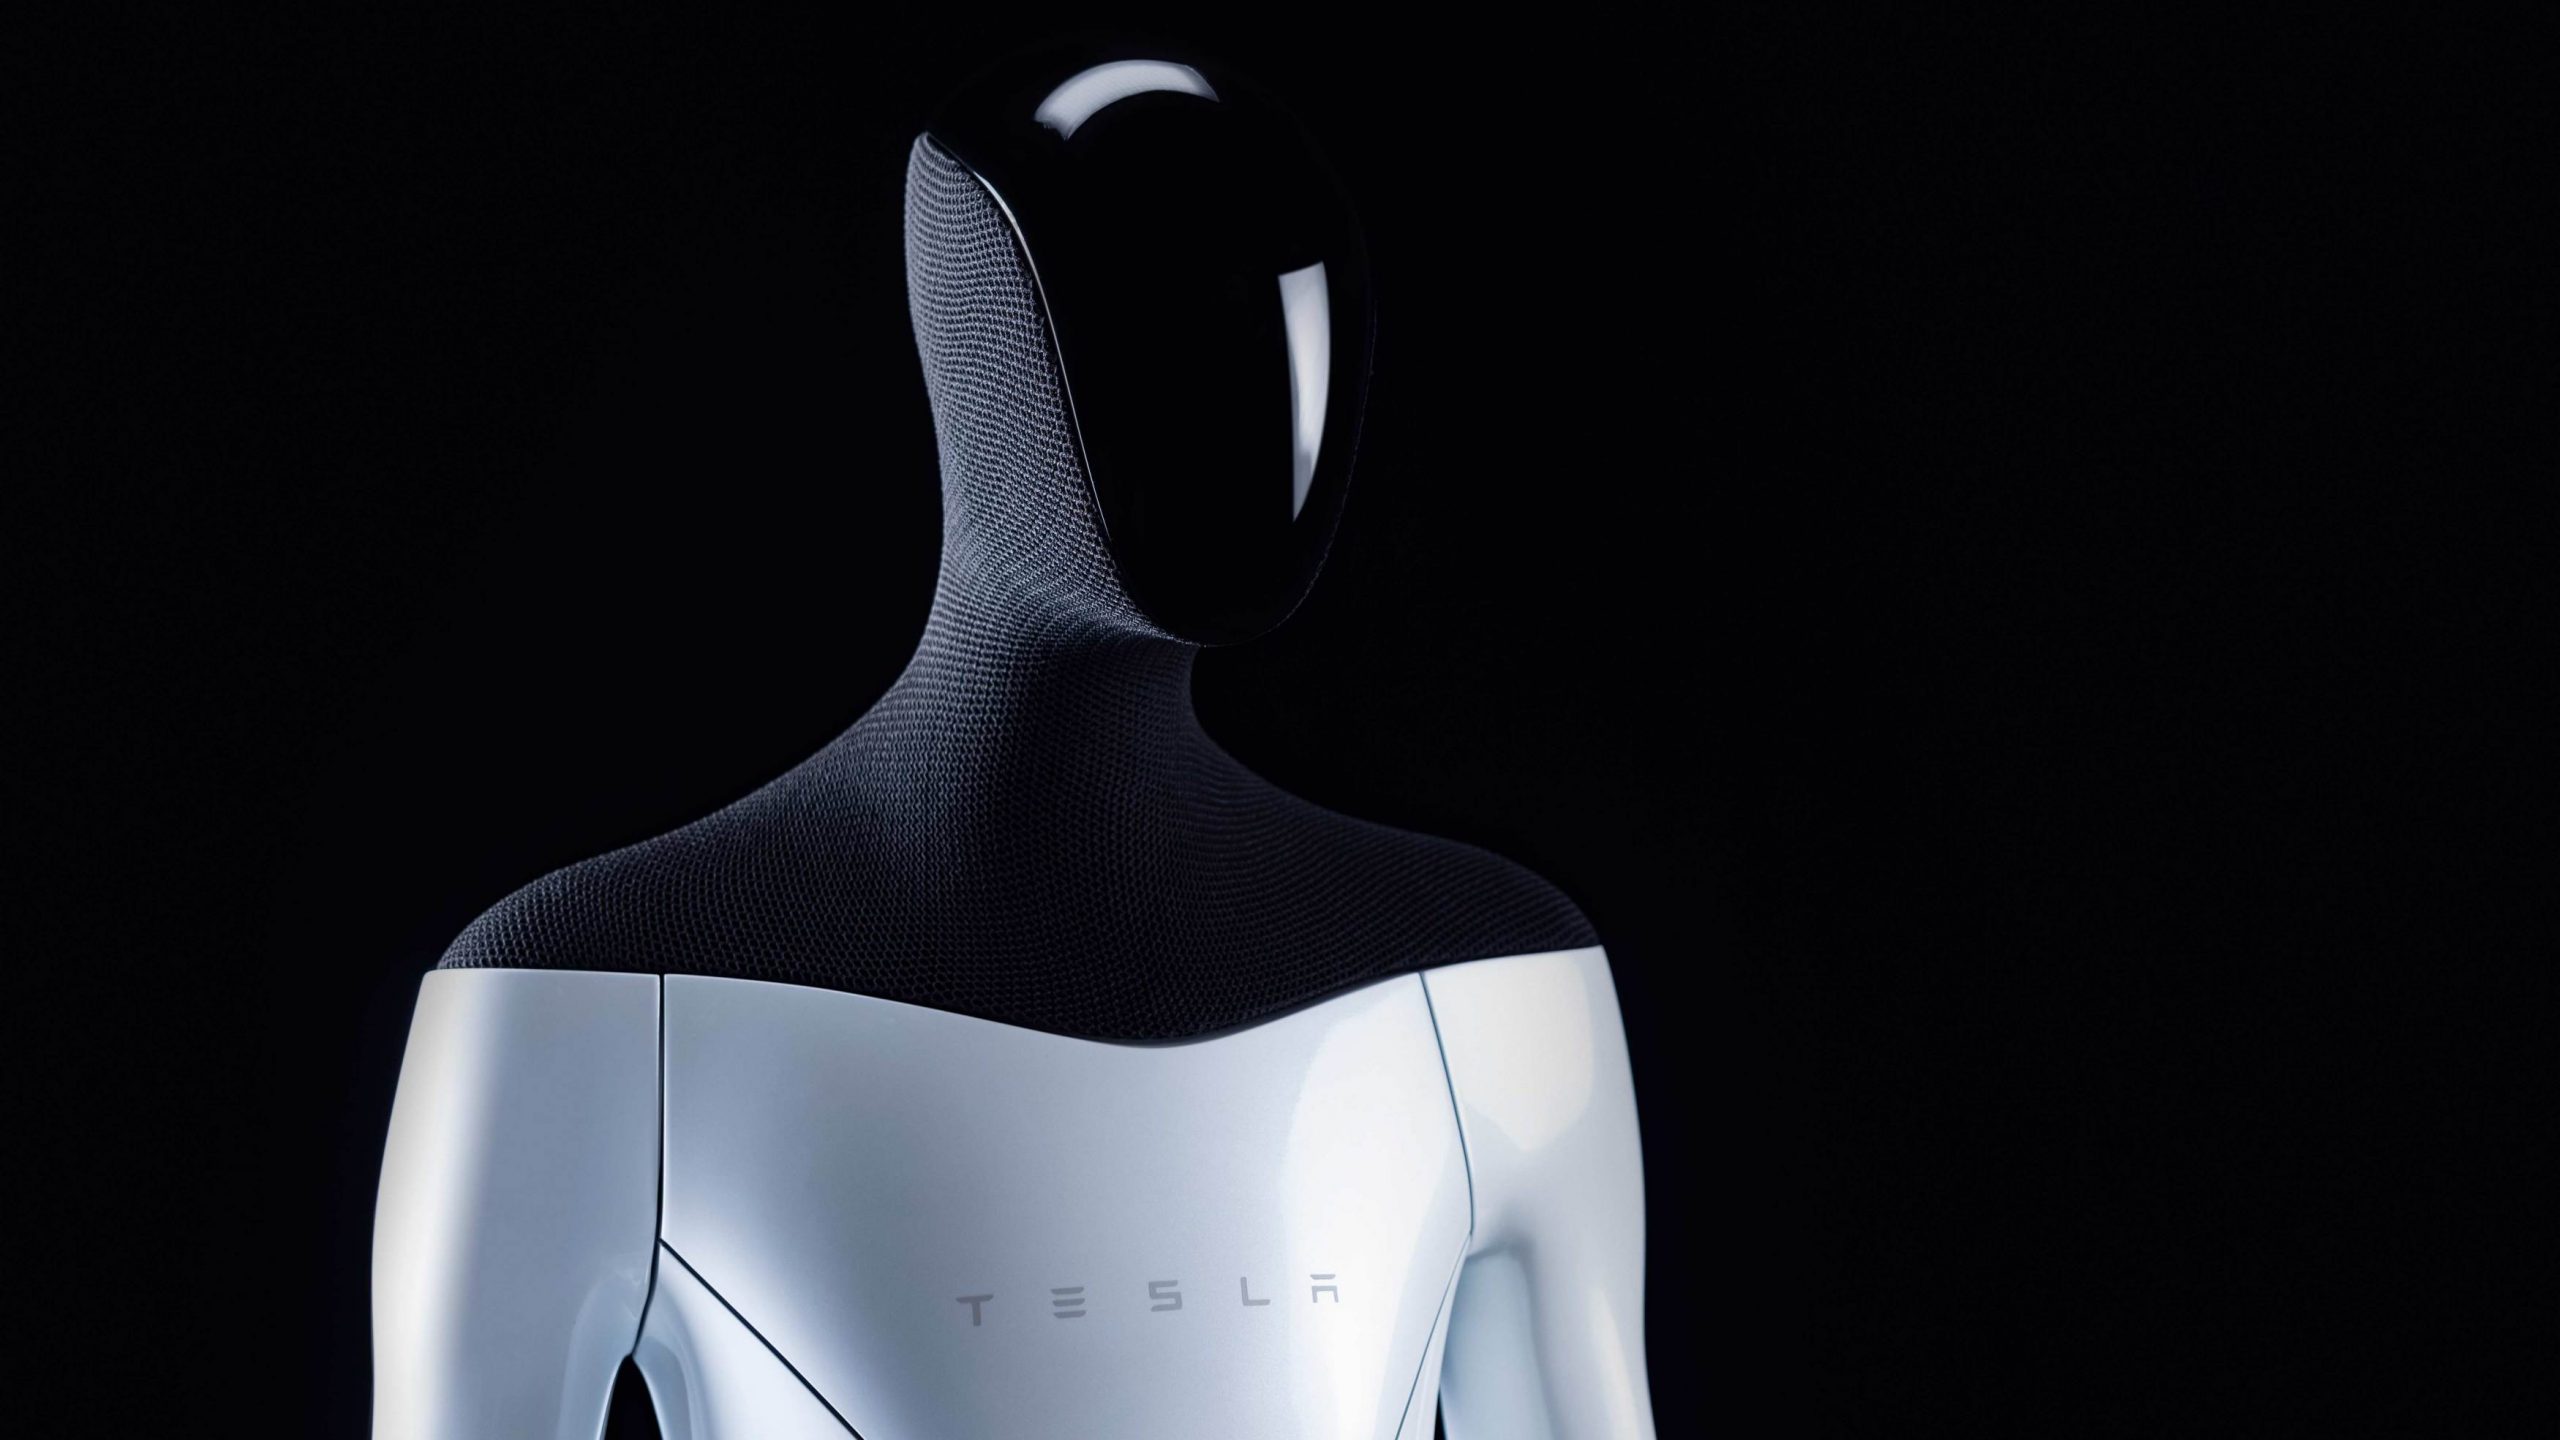 Elon Musk Memperlihatkan Robot Tesla Yang Kini Boleh Berjalan Dan Melakukan Tugasan